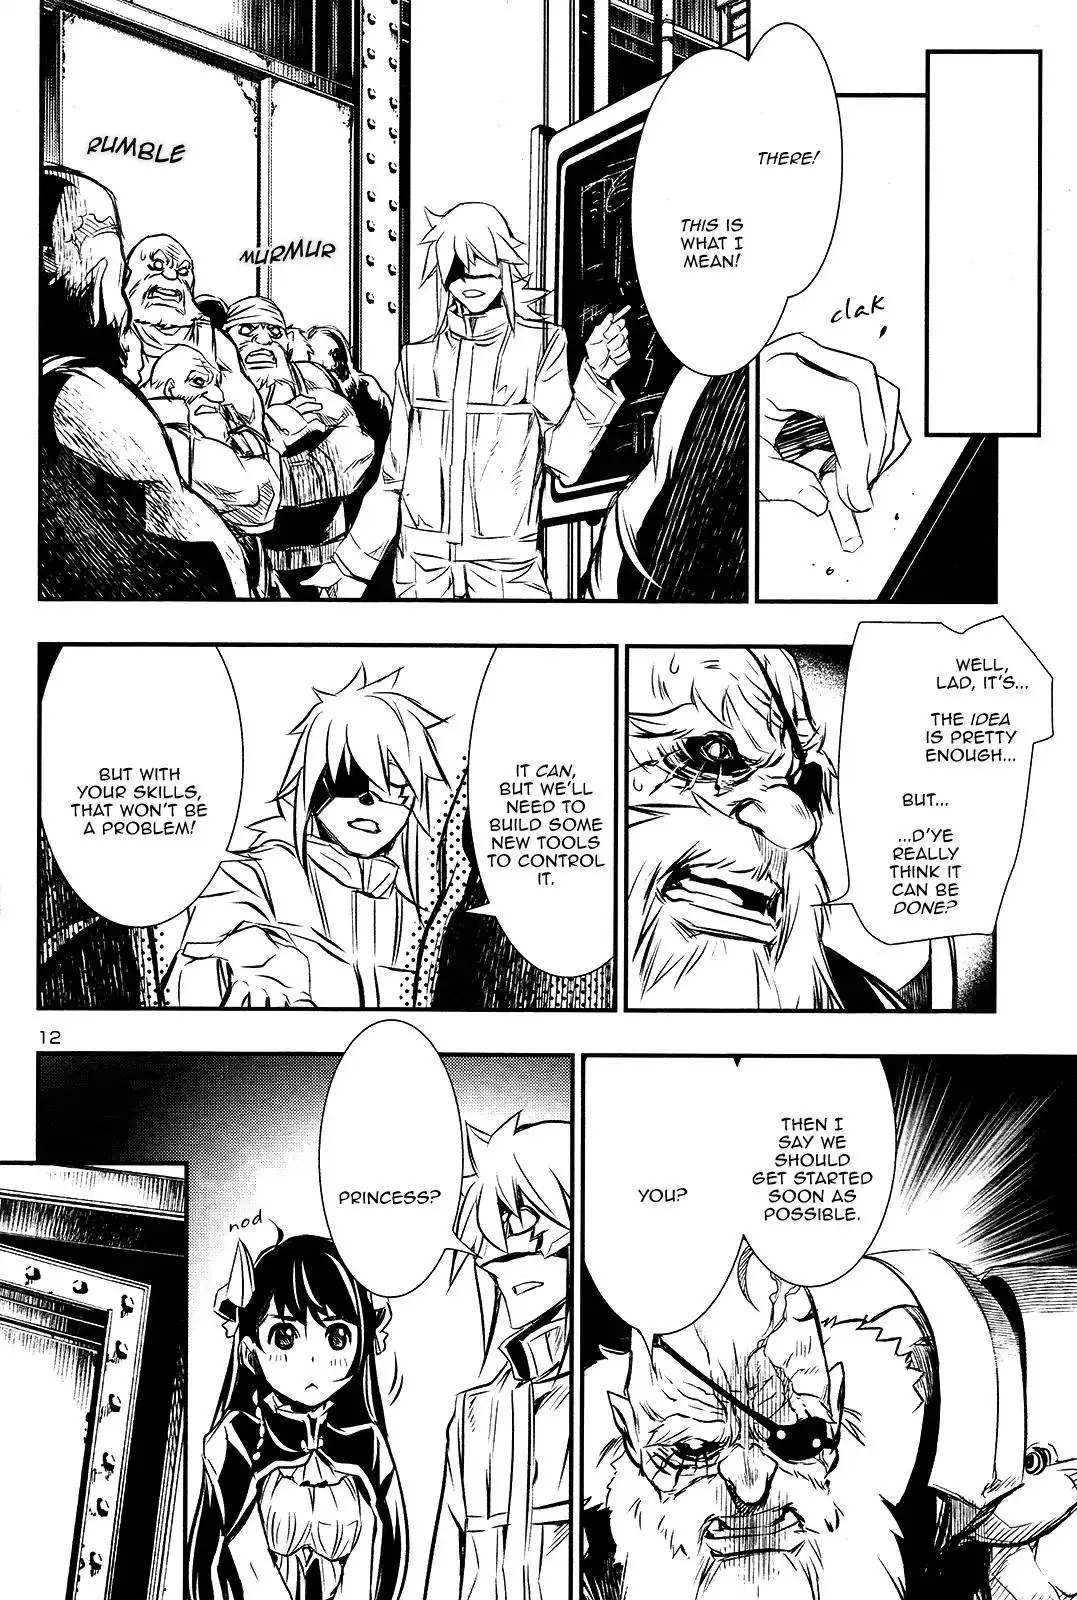 Shinju no Nectar - 11 page 10